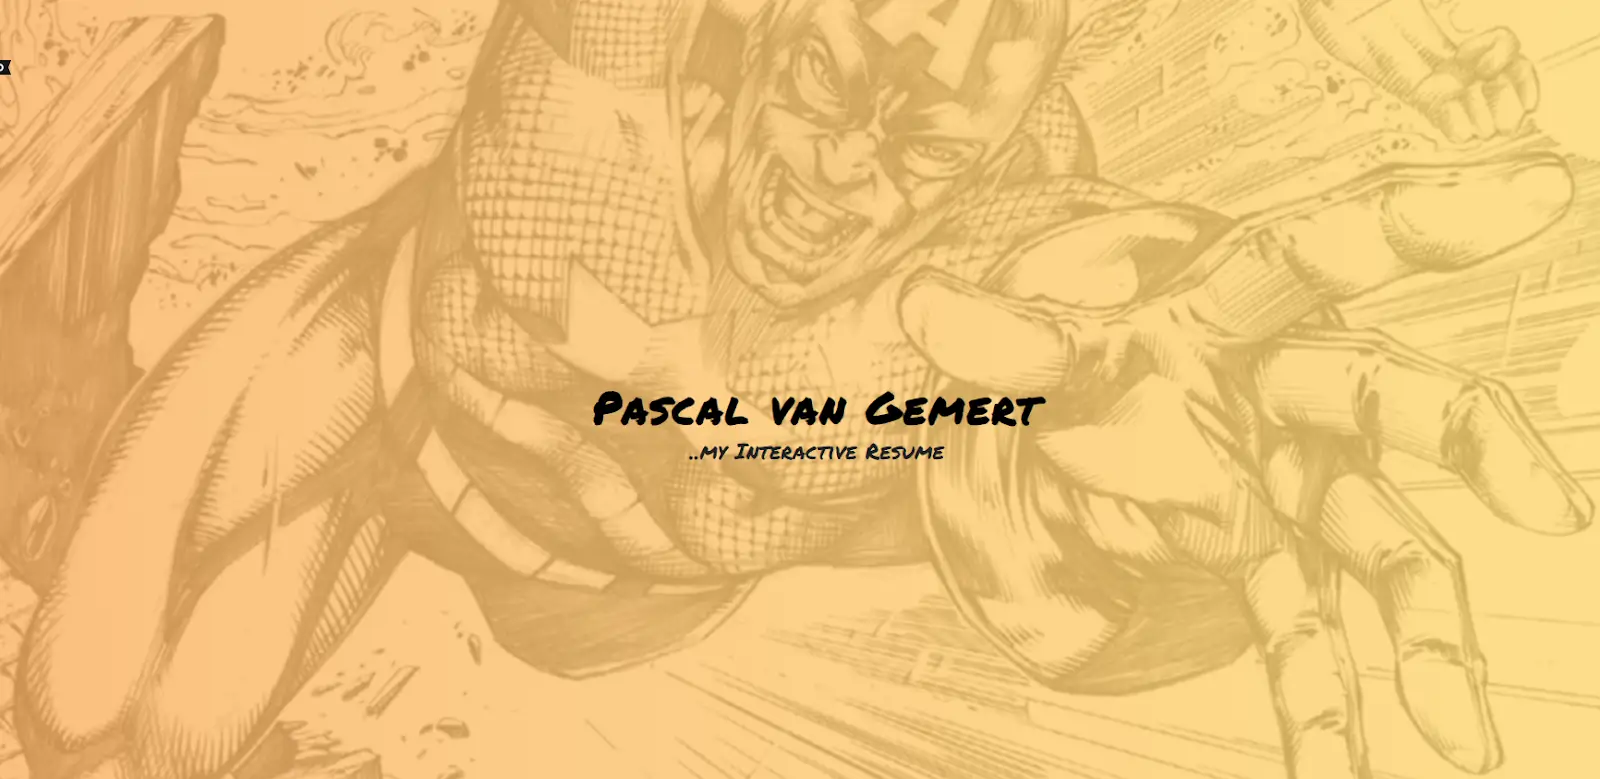 Sitio web de Pascal van Gemert como ejemplo de portafolio de desarrollador front-end